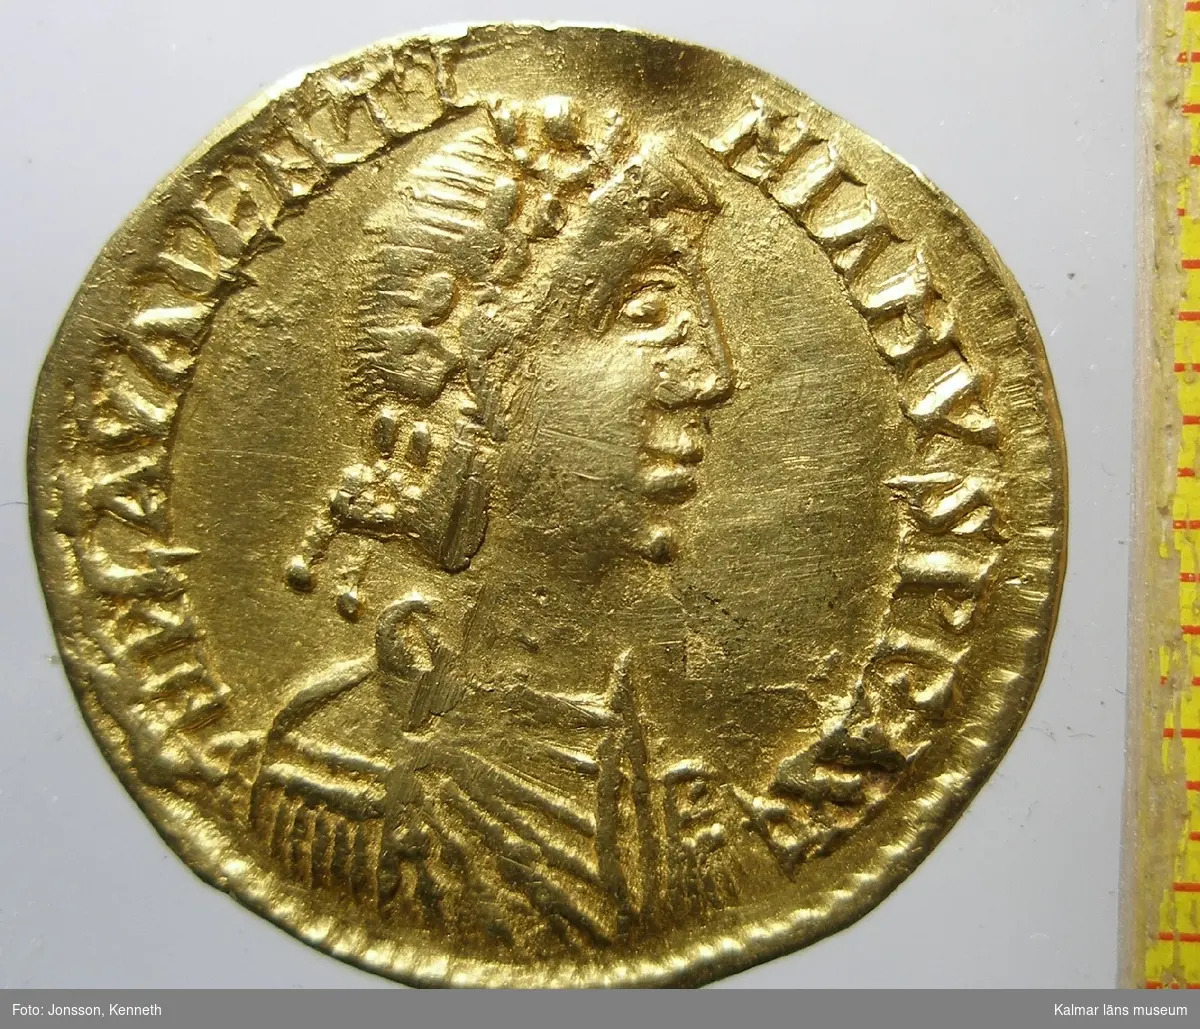 KLM 24706 Mynt, solidus, guld. Myntet präglat i Ravenna för Valentinianus III (425-455 e.kr.) Bestämning: F 78 (platell).